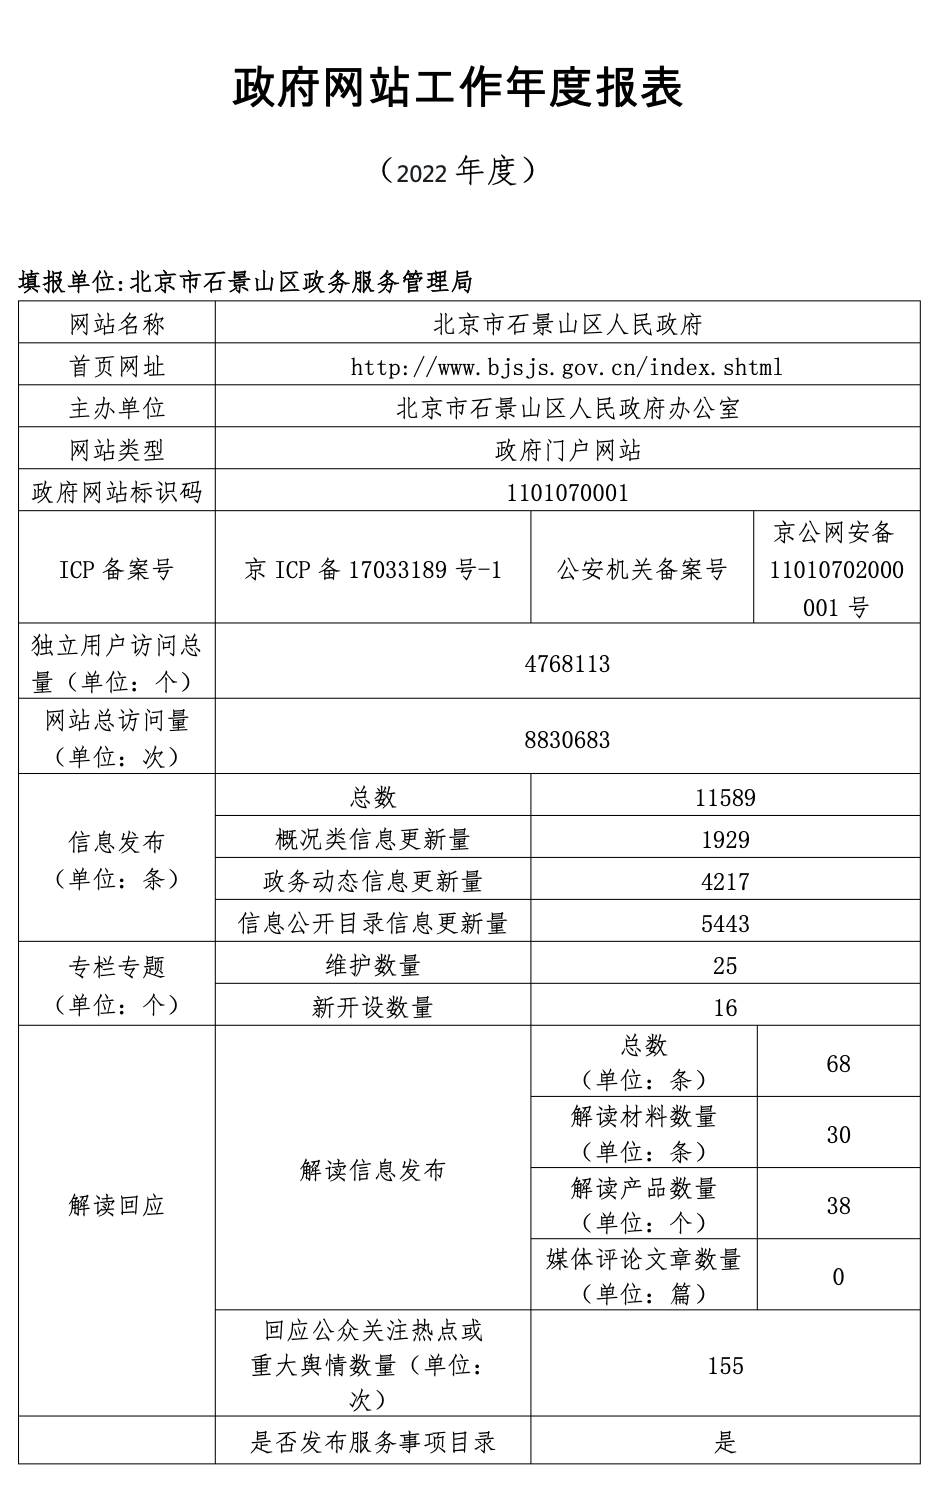 北京市石景山區人民政府2022年政府網站年度工作報表